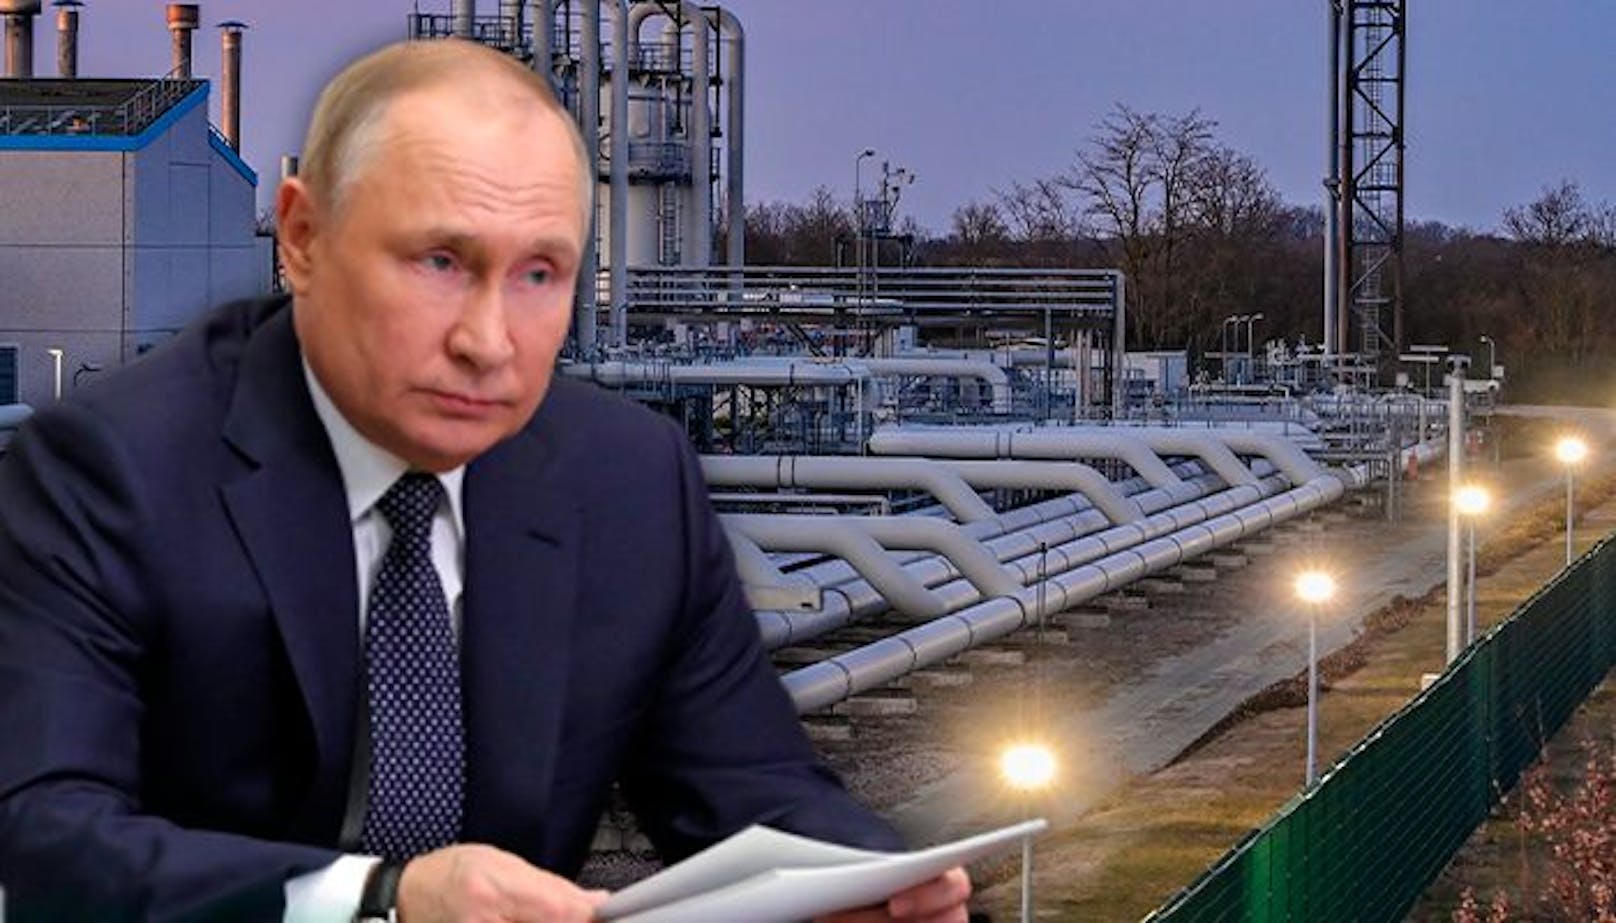 Kreml-Machthaber Putin dreht weiter am Gashahn.